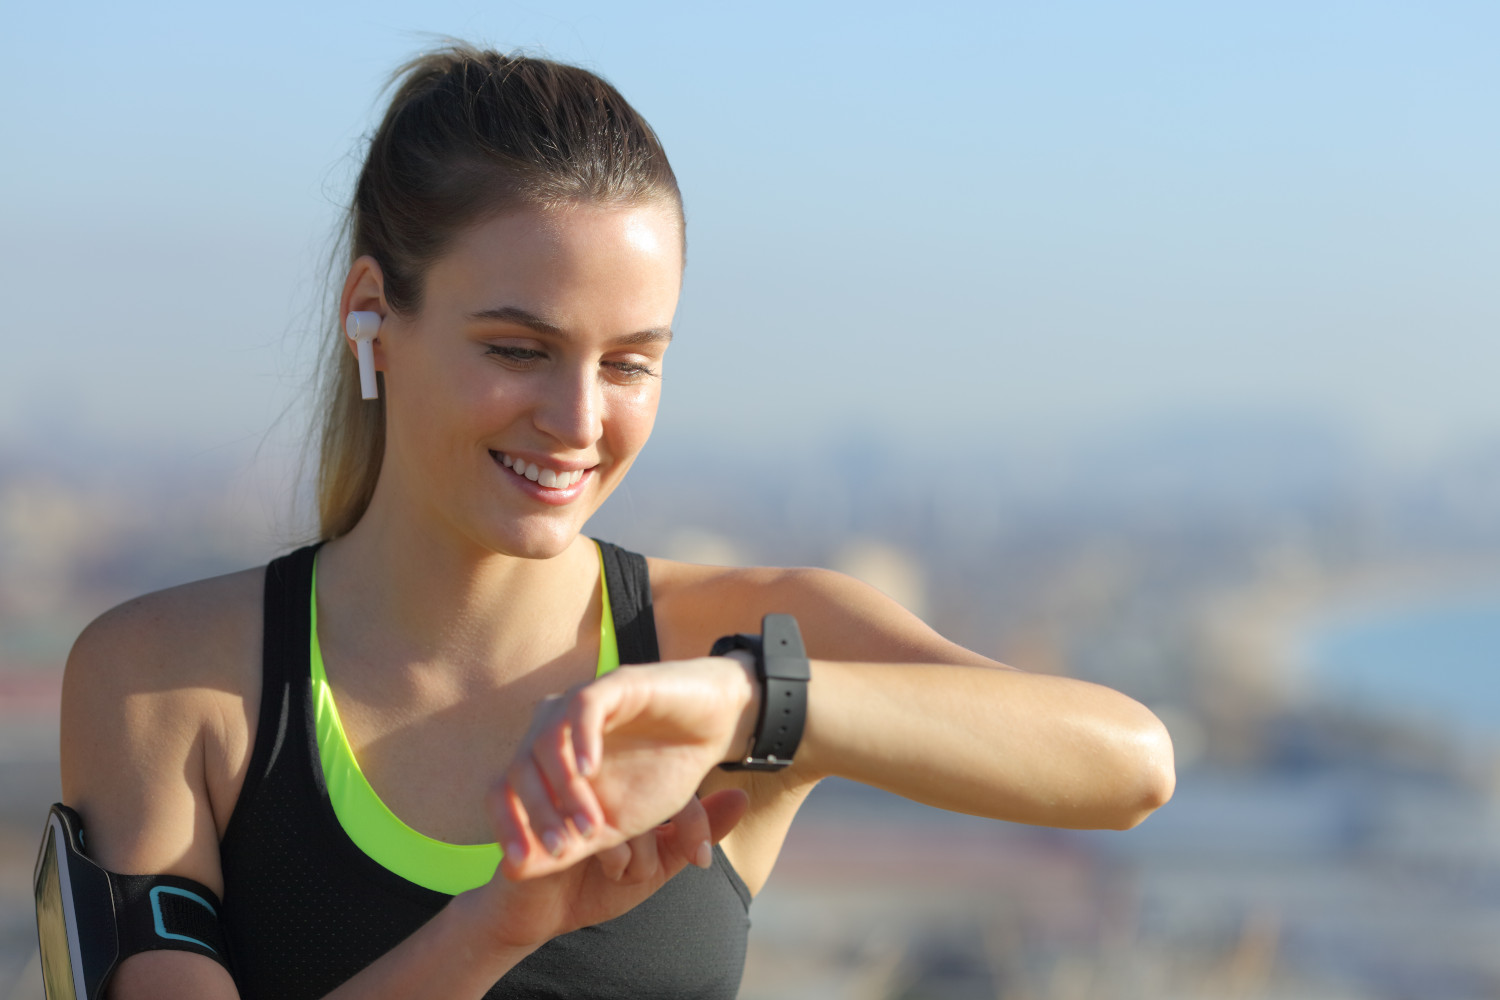 Cuffie Bluetooth per correre e fare sport: guida all'acquisto